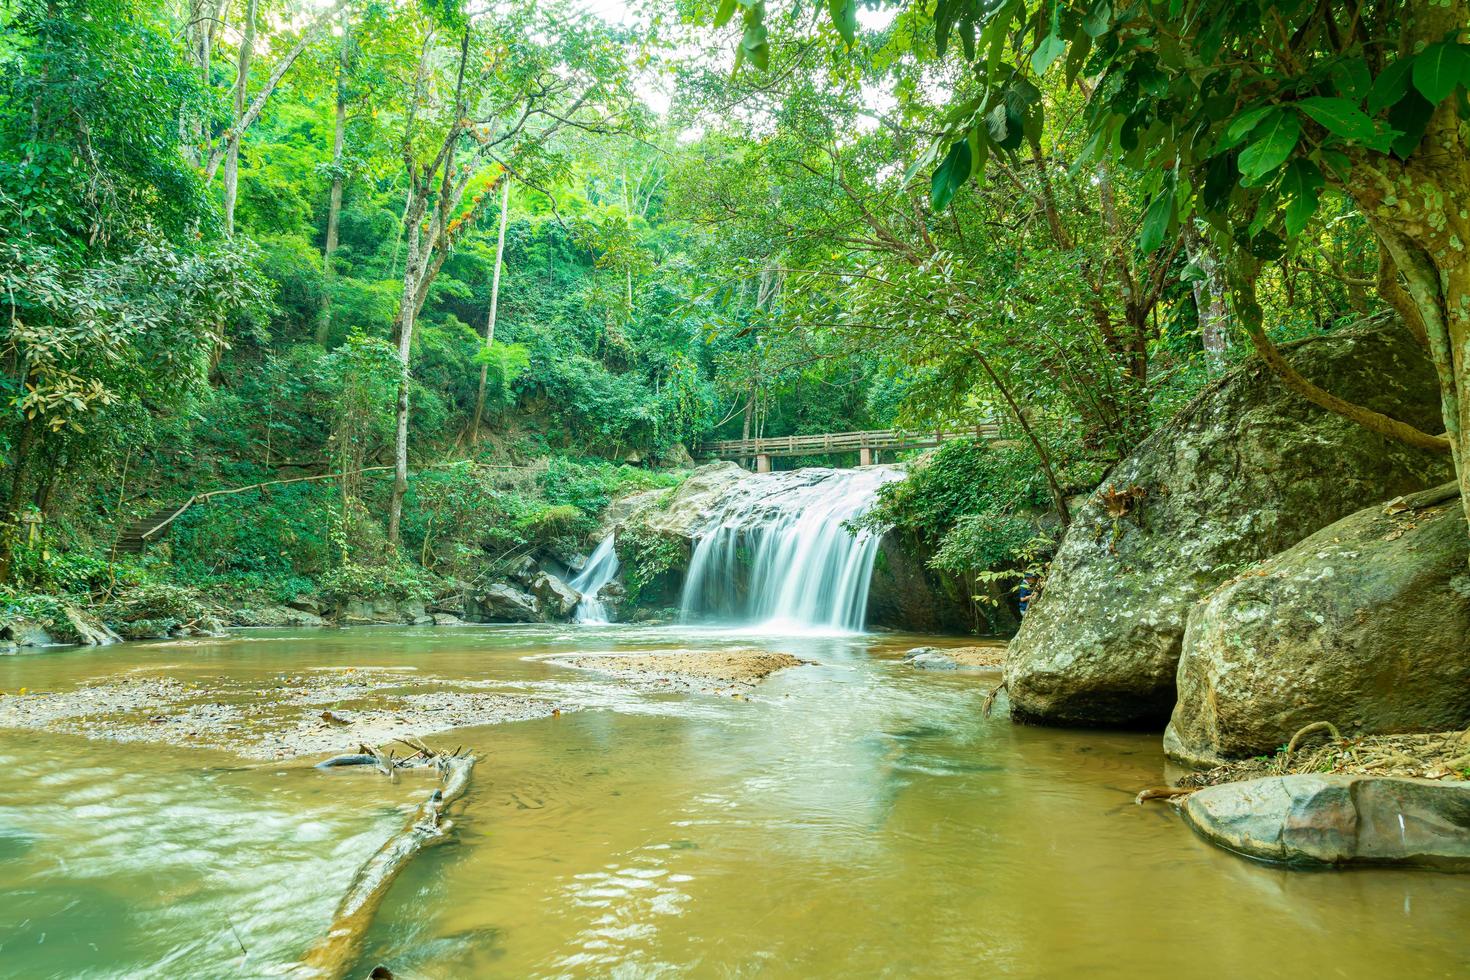 Mae Sa Waterfall in Thailand photo